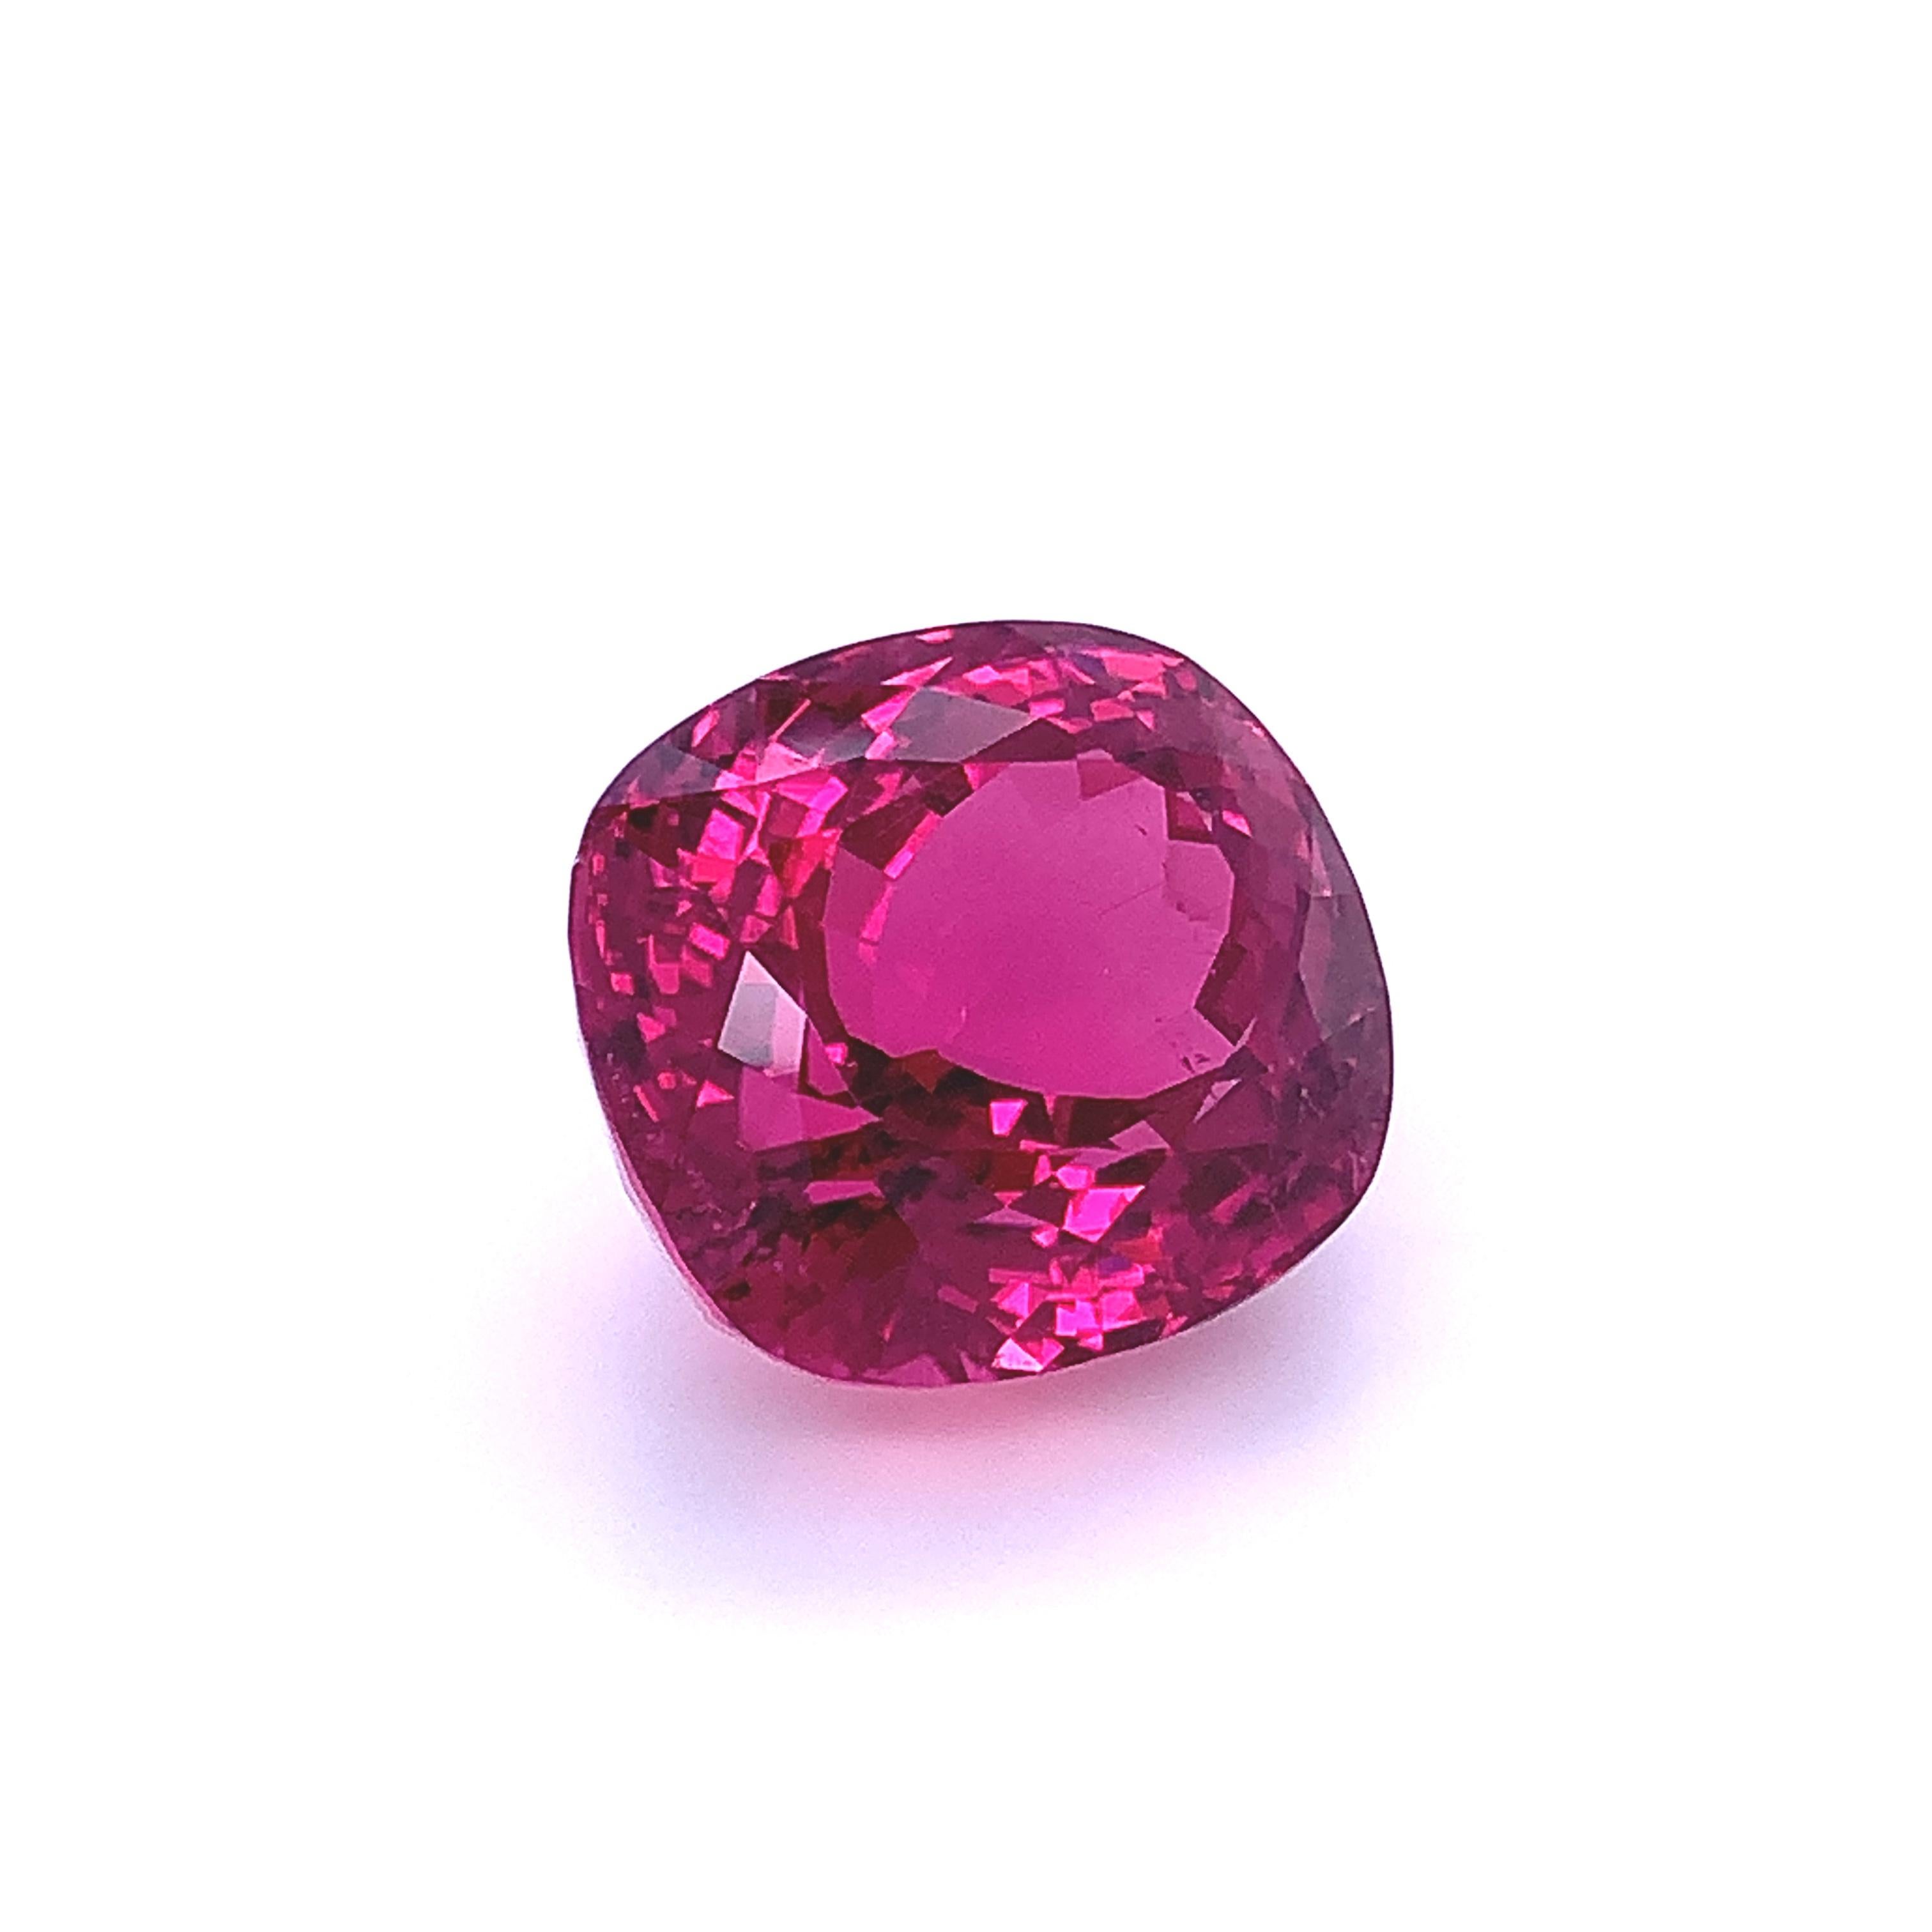 44.97 Carat Purple Pink Tourmaline, Loose Gemstone, GIA Certified 2